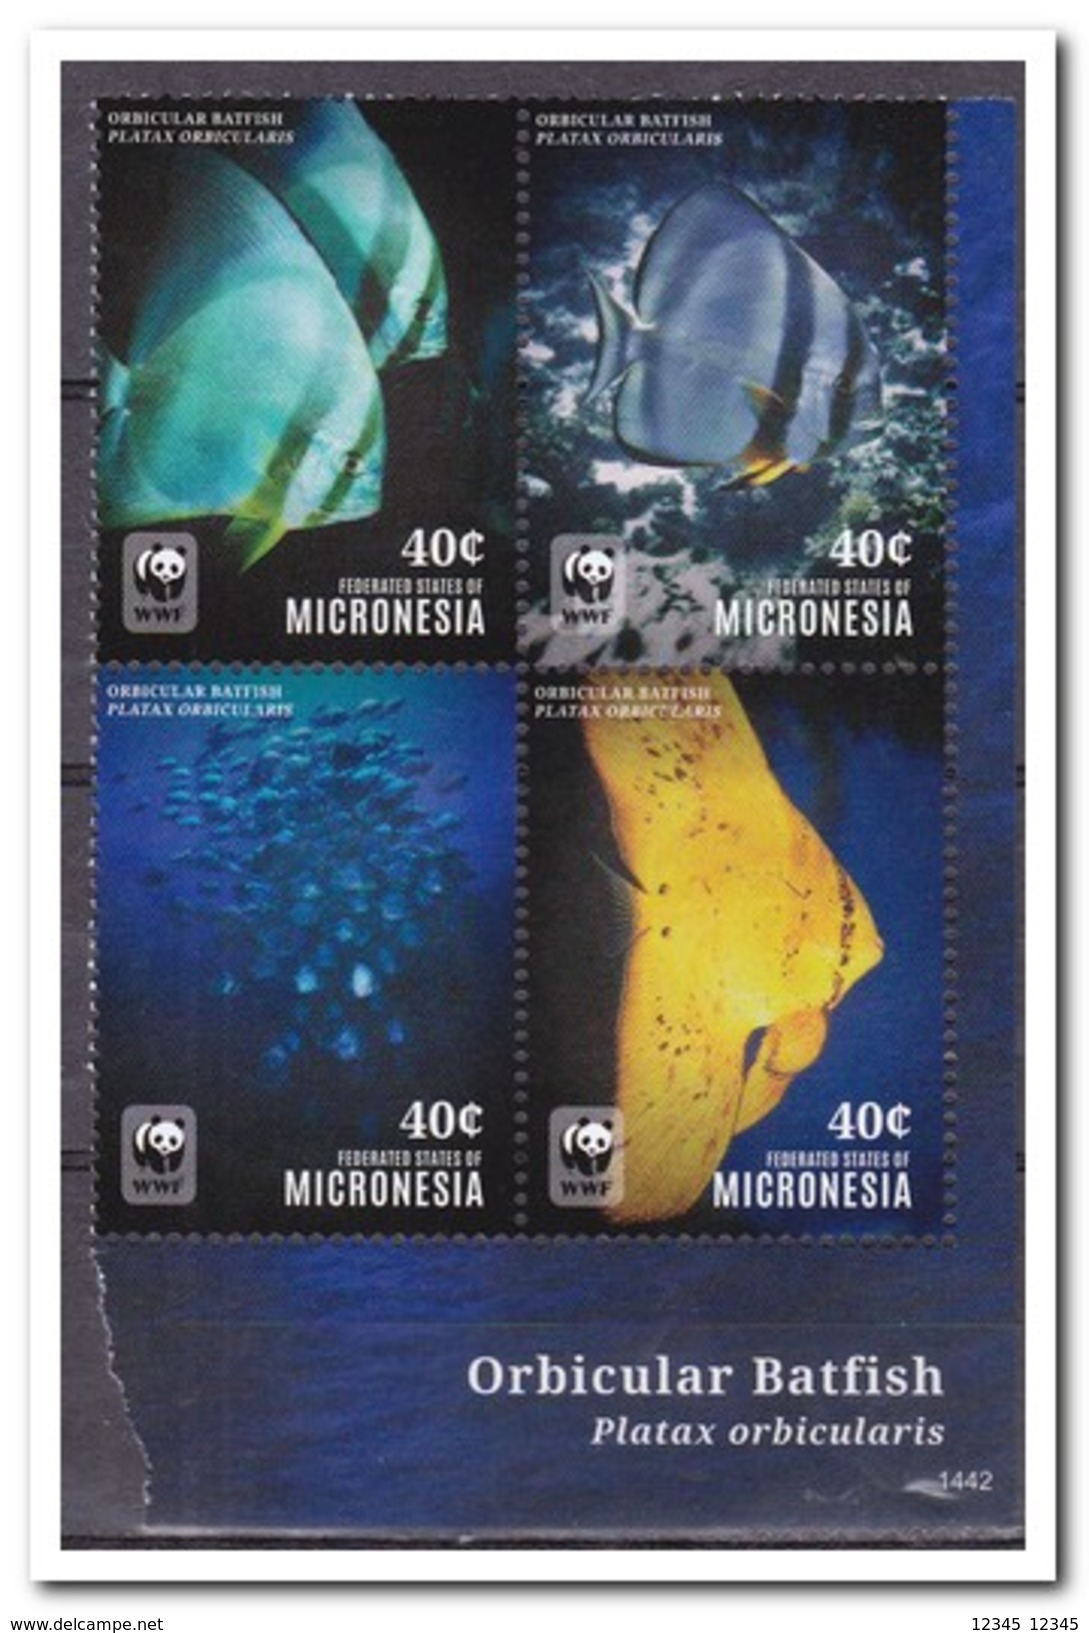 Micronesië 2014, Postfris MNH, WWF, Fish - Micronesia